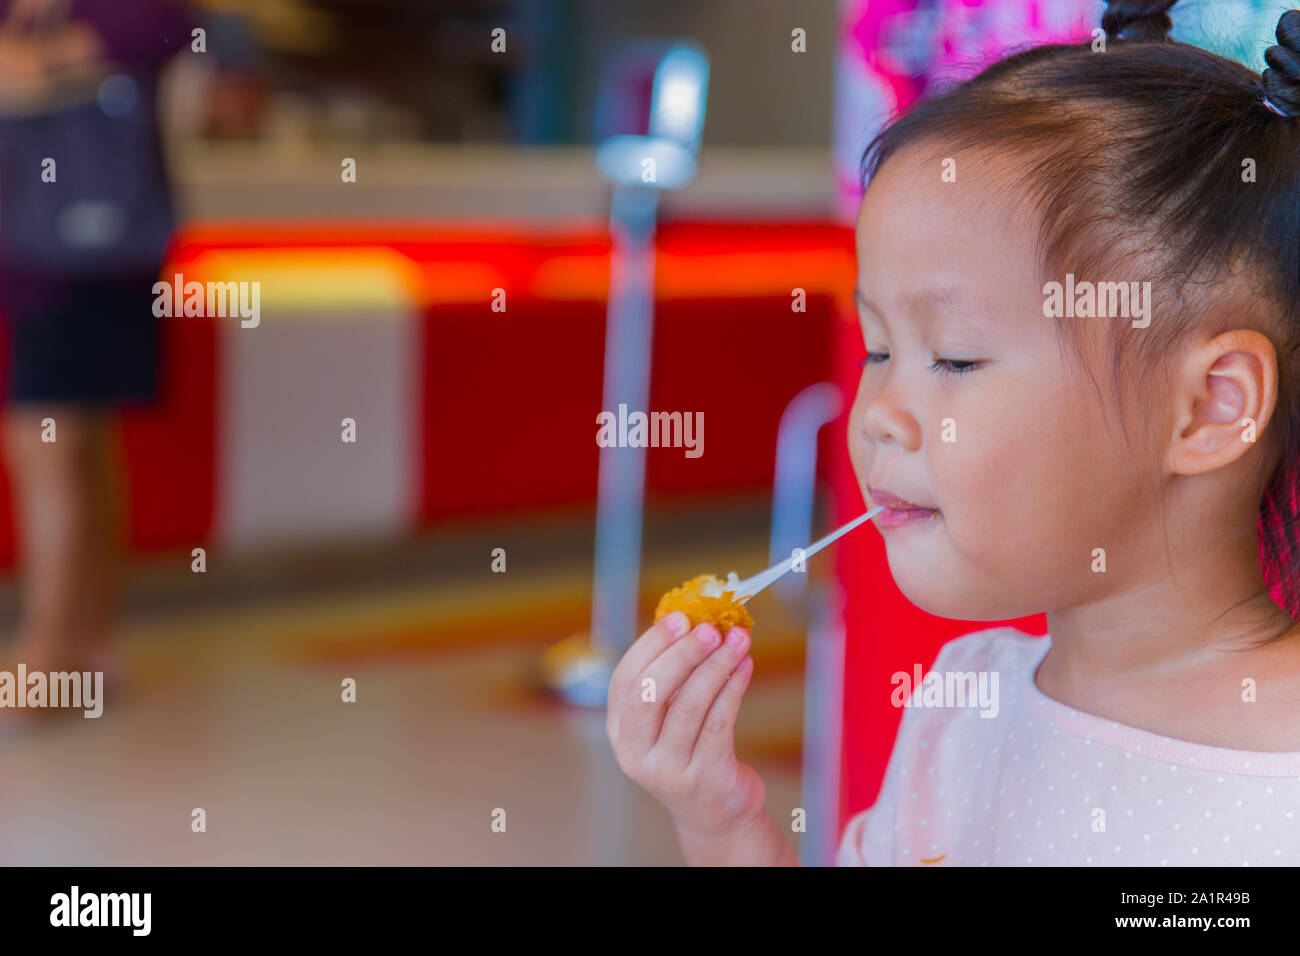 Kleines Kind asiatische Essen klebrige Strecke gebratener Käse Ball. Gefühl genießen. Hochauflösende Bilder Galerie. Stockfoto